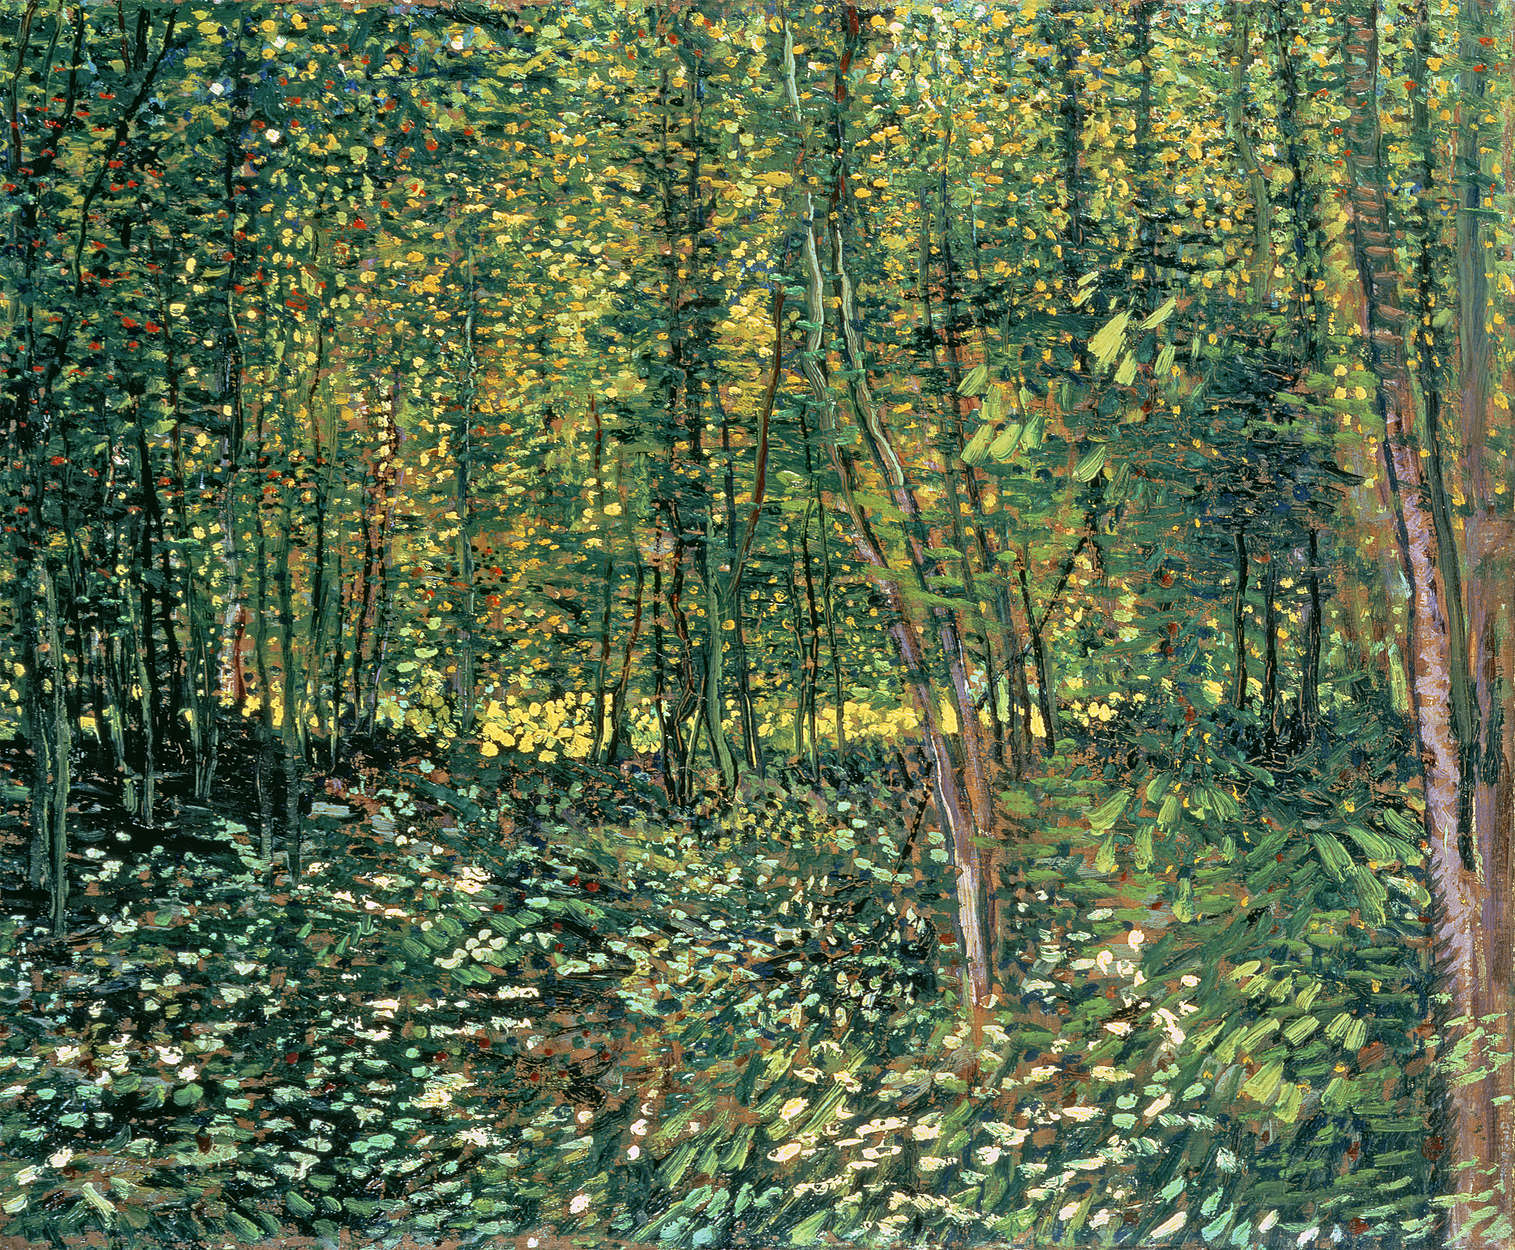             Fototapete "Bäume und Gestrüpp" von Vincent van Gogh
        